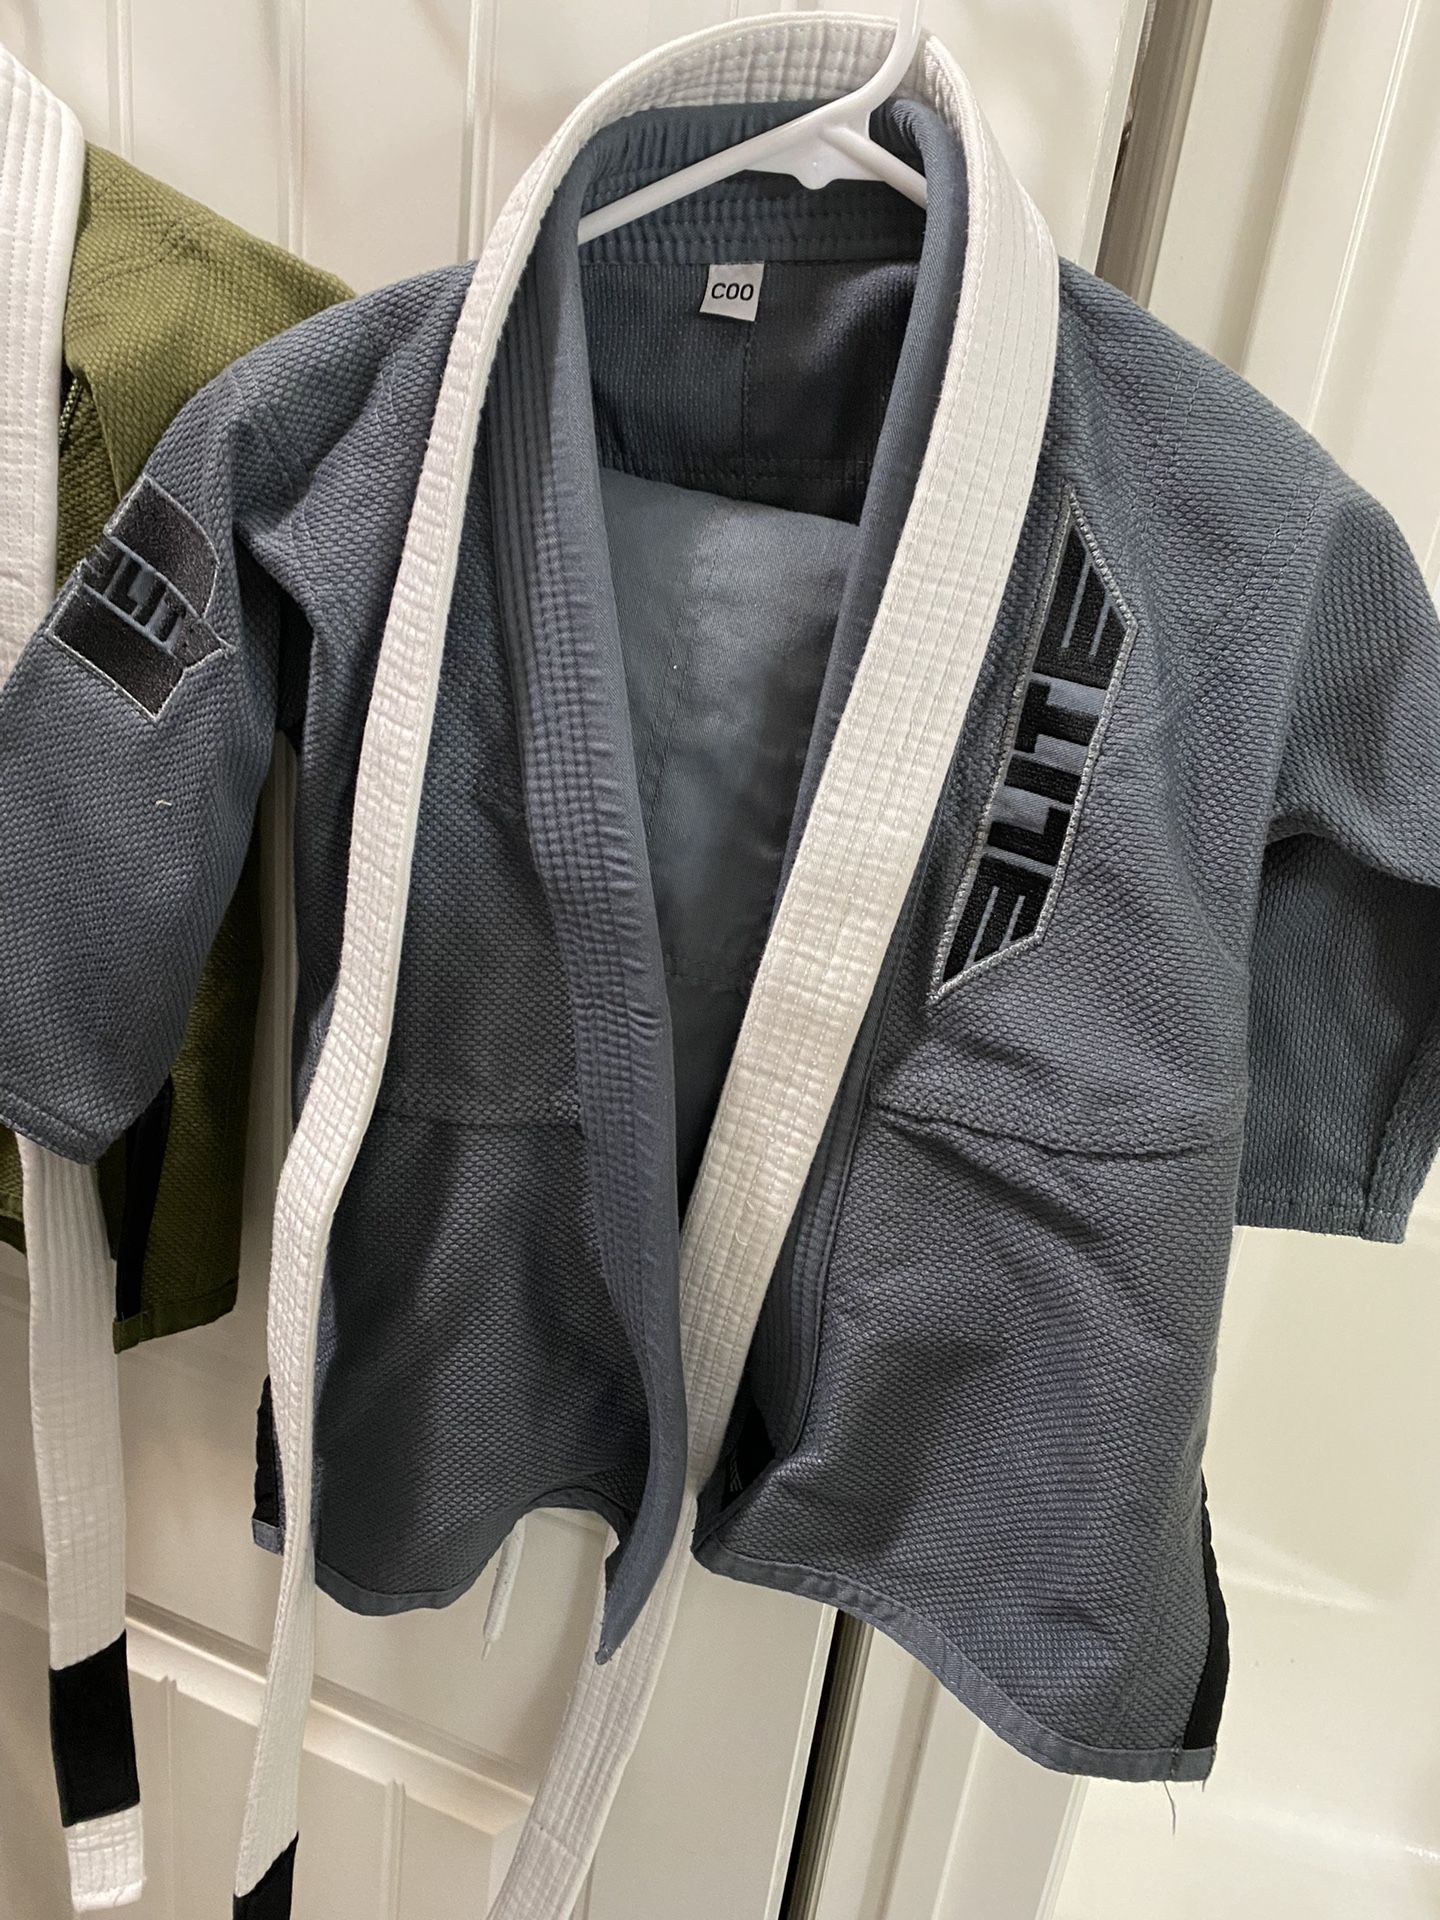 Gi Kimonos For Jui Jitsu